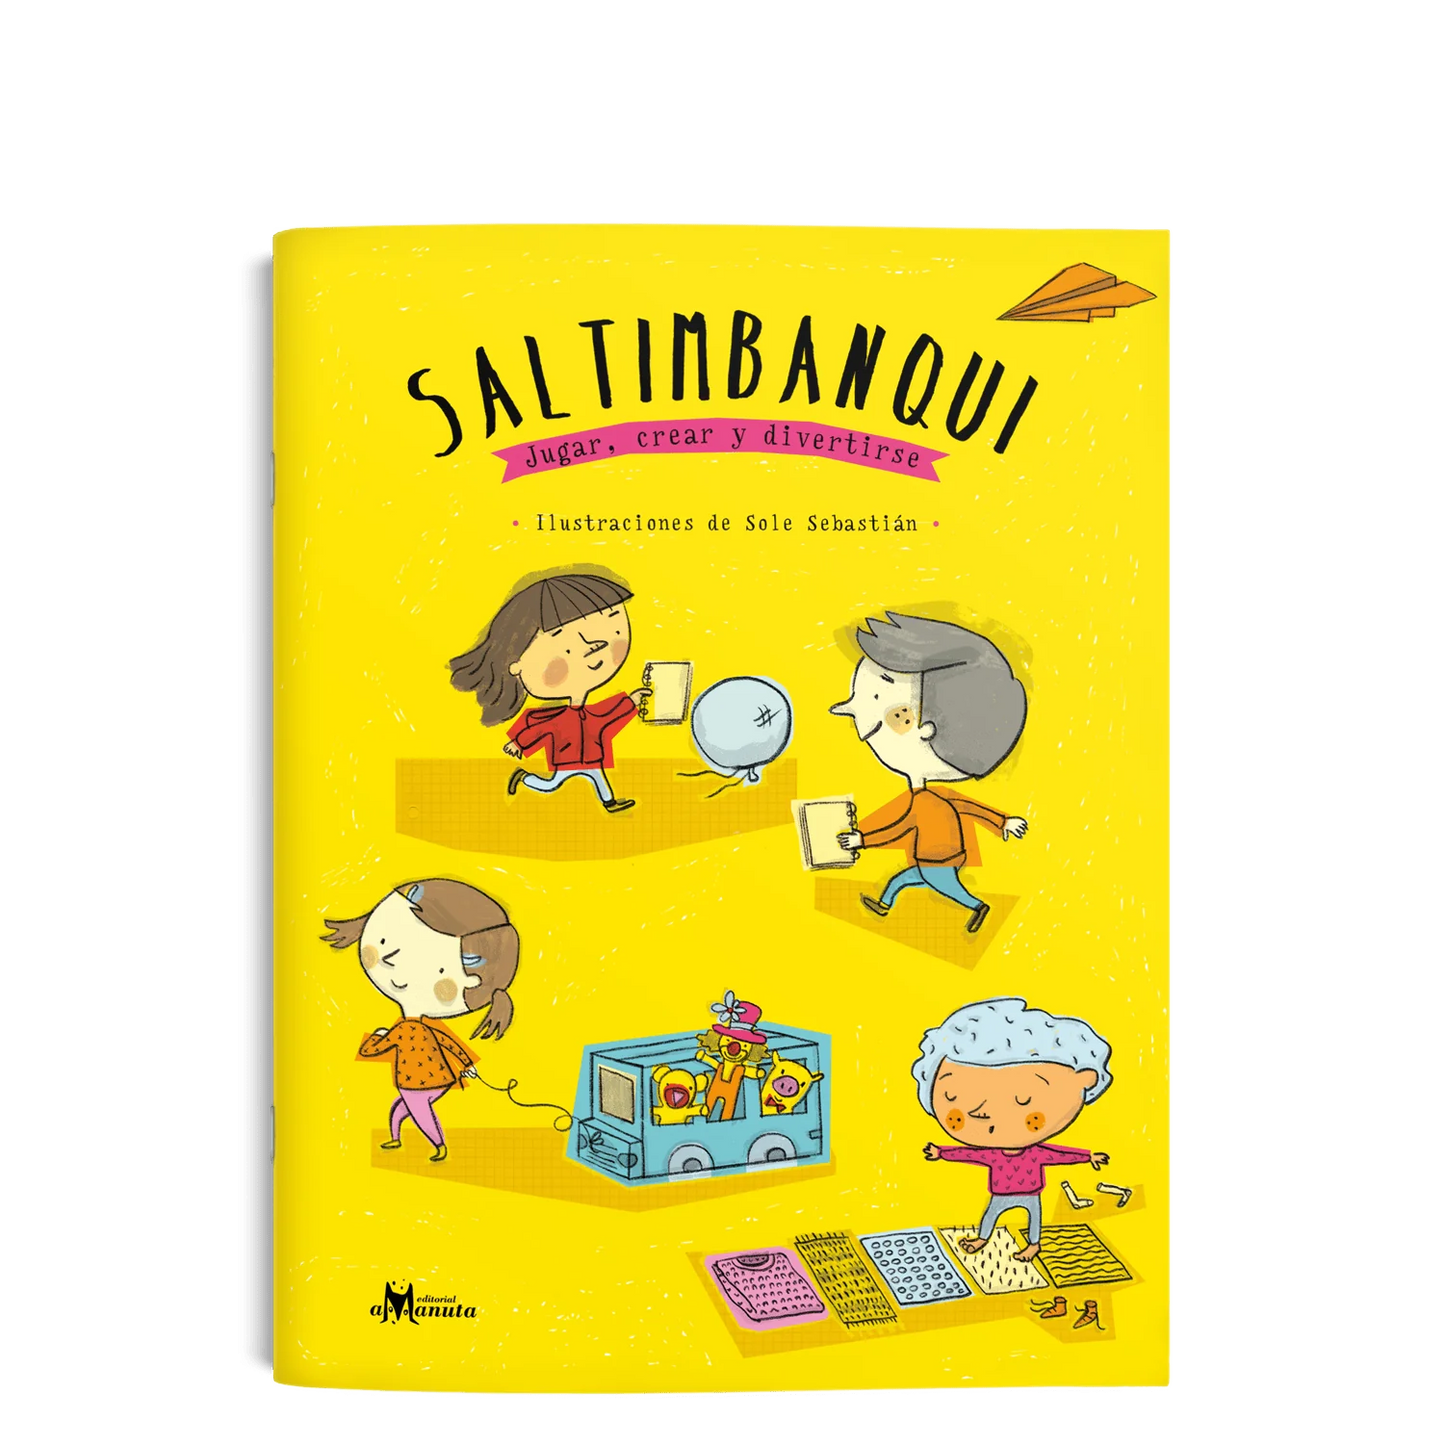 Saltimbanqui: jugar, crear y divertirse